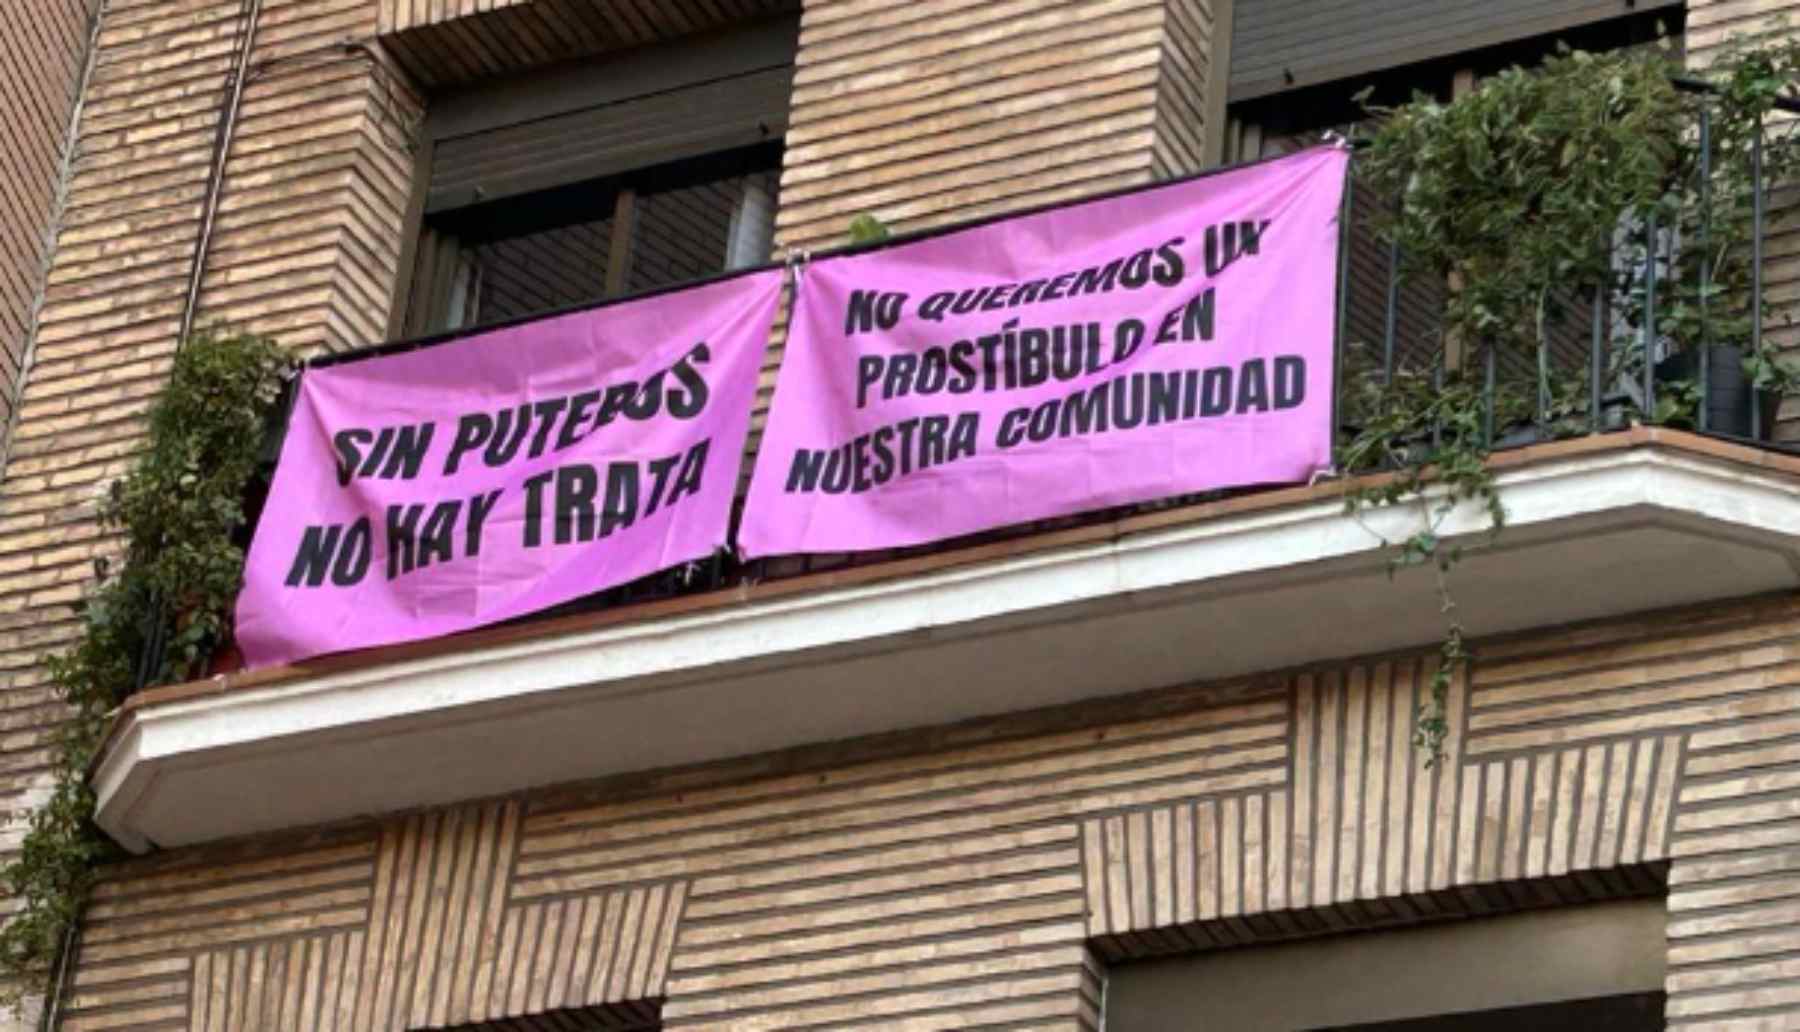 Carteles contra los prostíbulos en Zaragoza